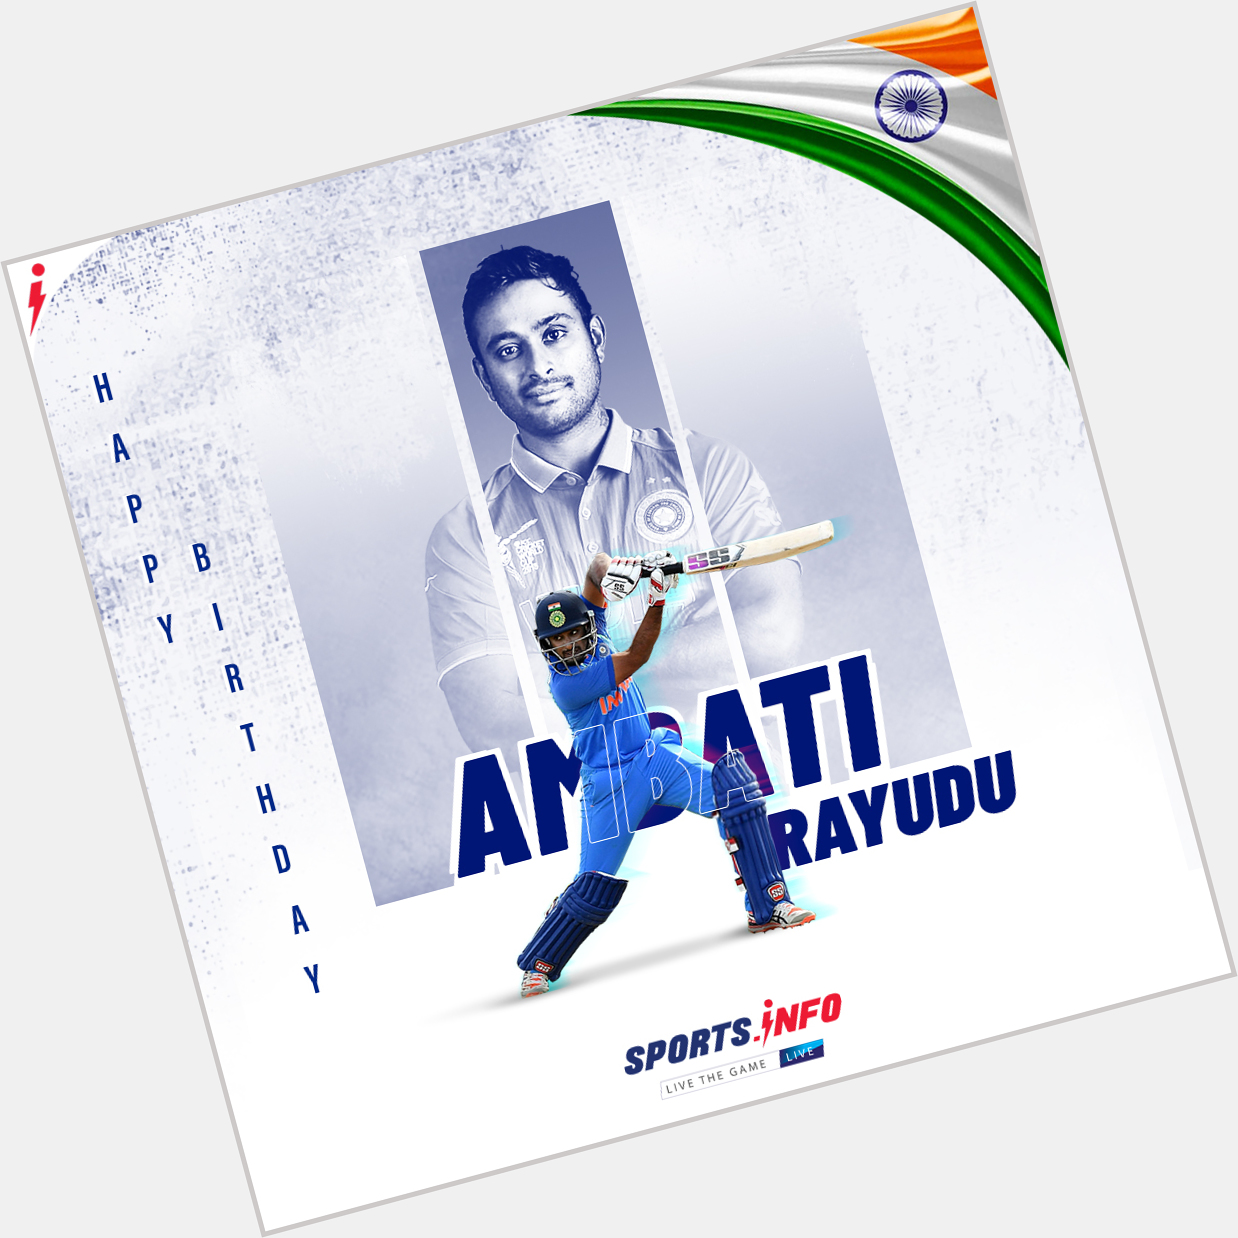 Happy birthday to India\s star player Ambati Rayudu.     